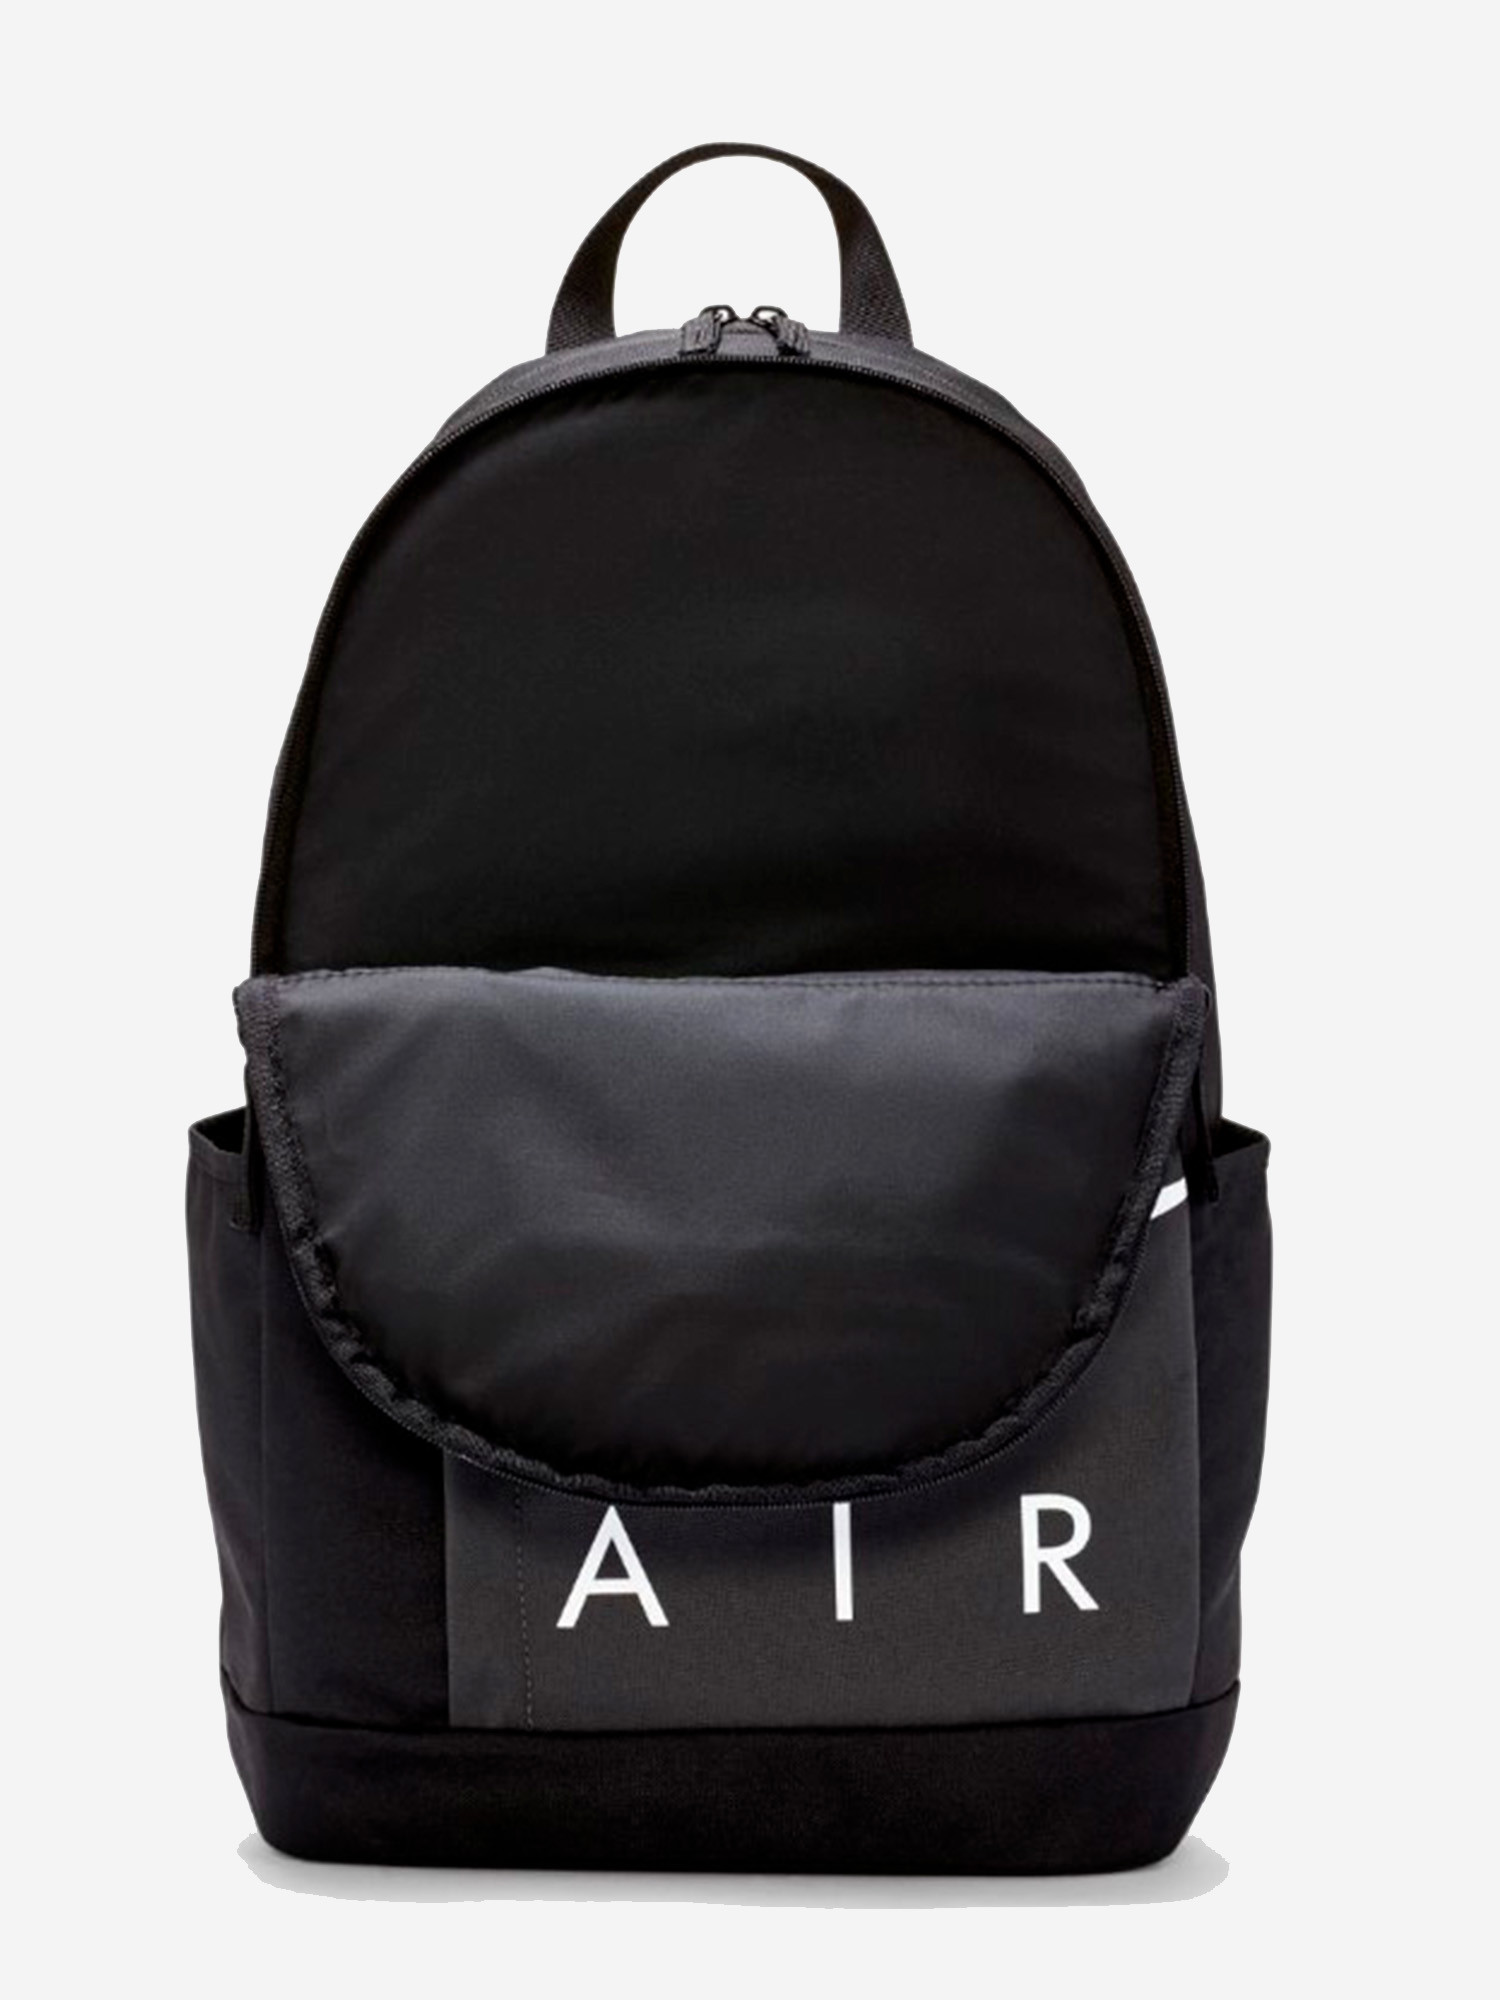 Рюкзак Nike Elemental Air